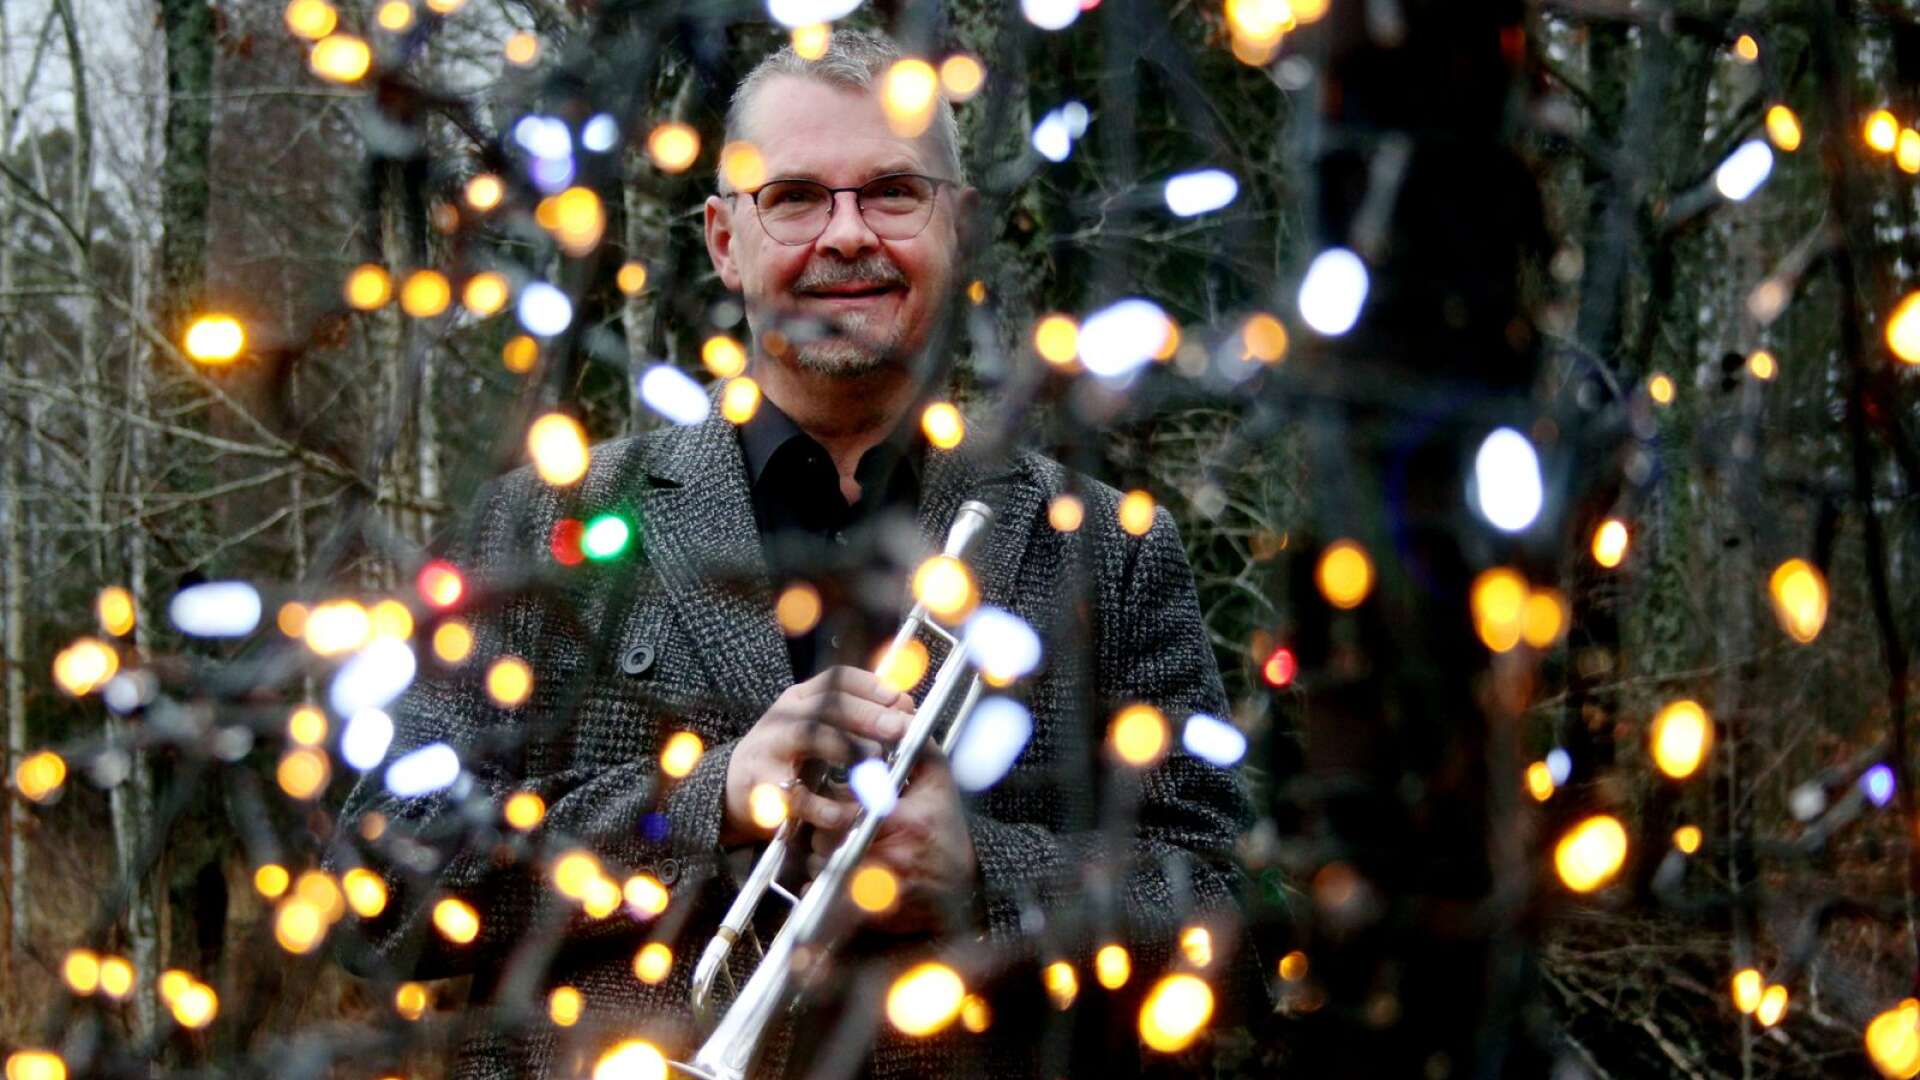 Rustan Christensson är trumpetare och har spelat på julnattsmässor och julottor i många år. I år får han för första gången på väldigt länge en ledig jul - men han hade hellre jobbat.